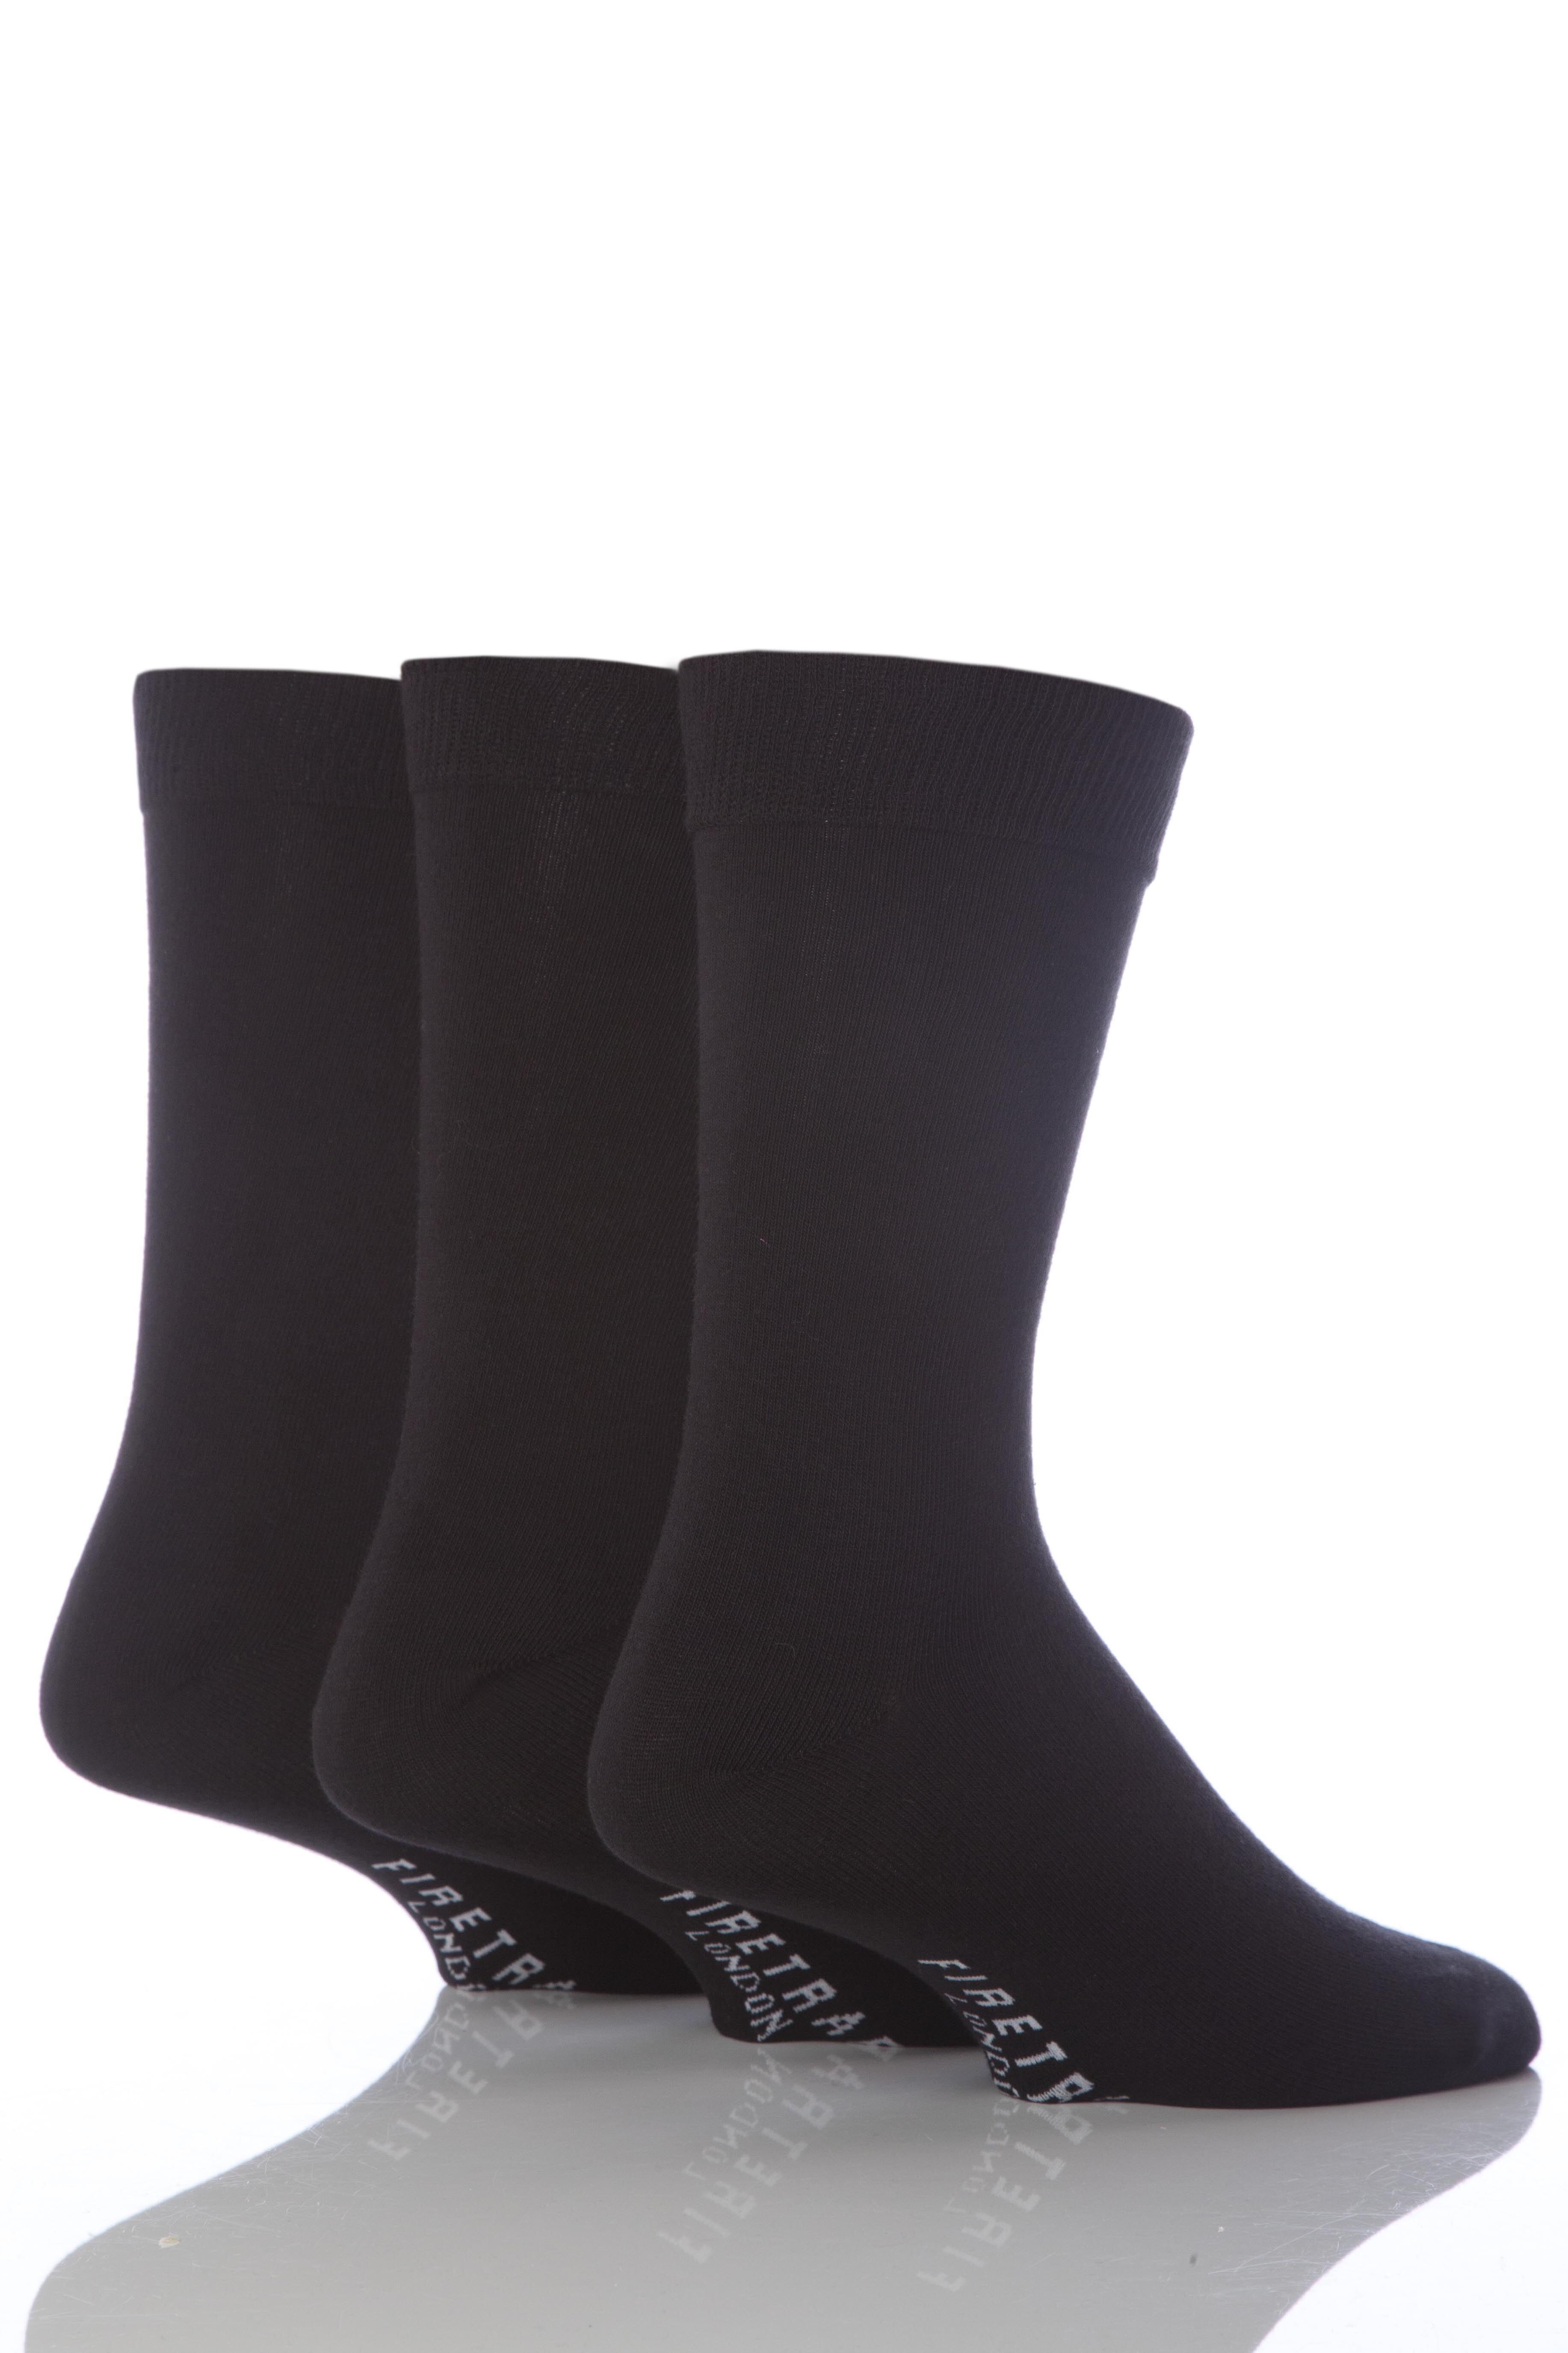 Mens 3 Pair Firetrap Plain Dress Socks In Black Black Livefly